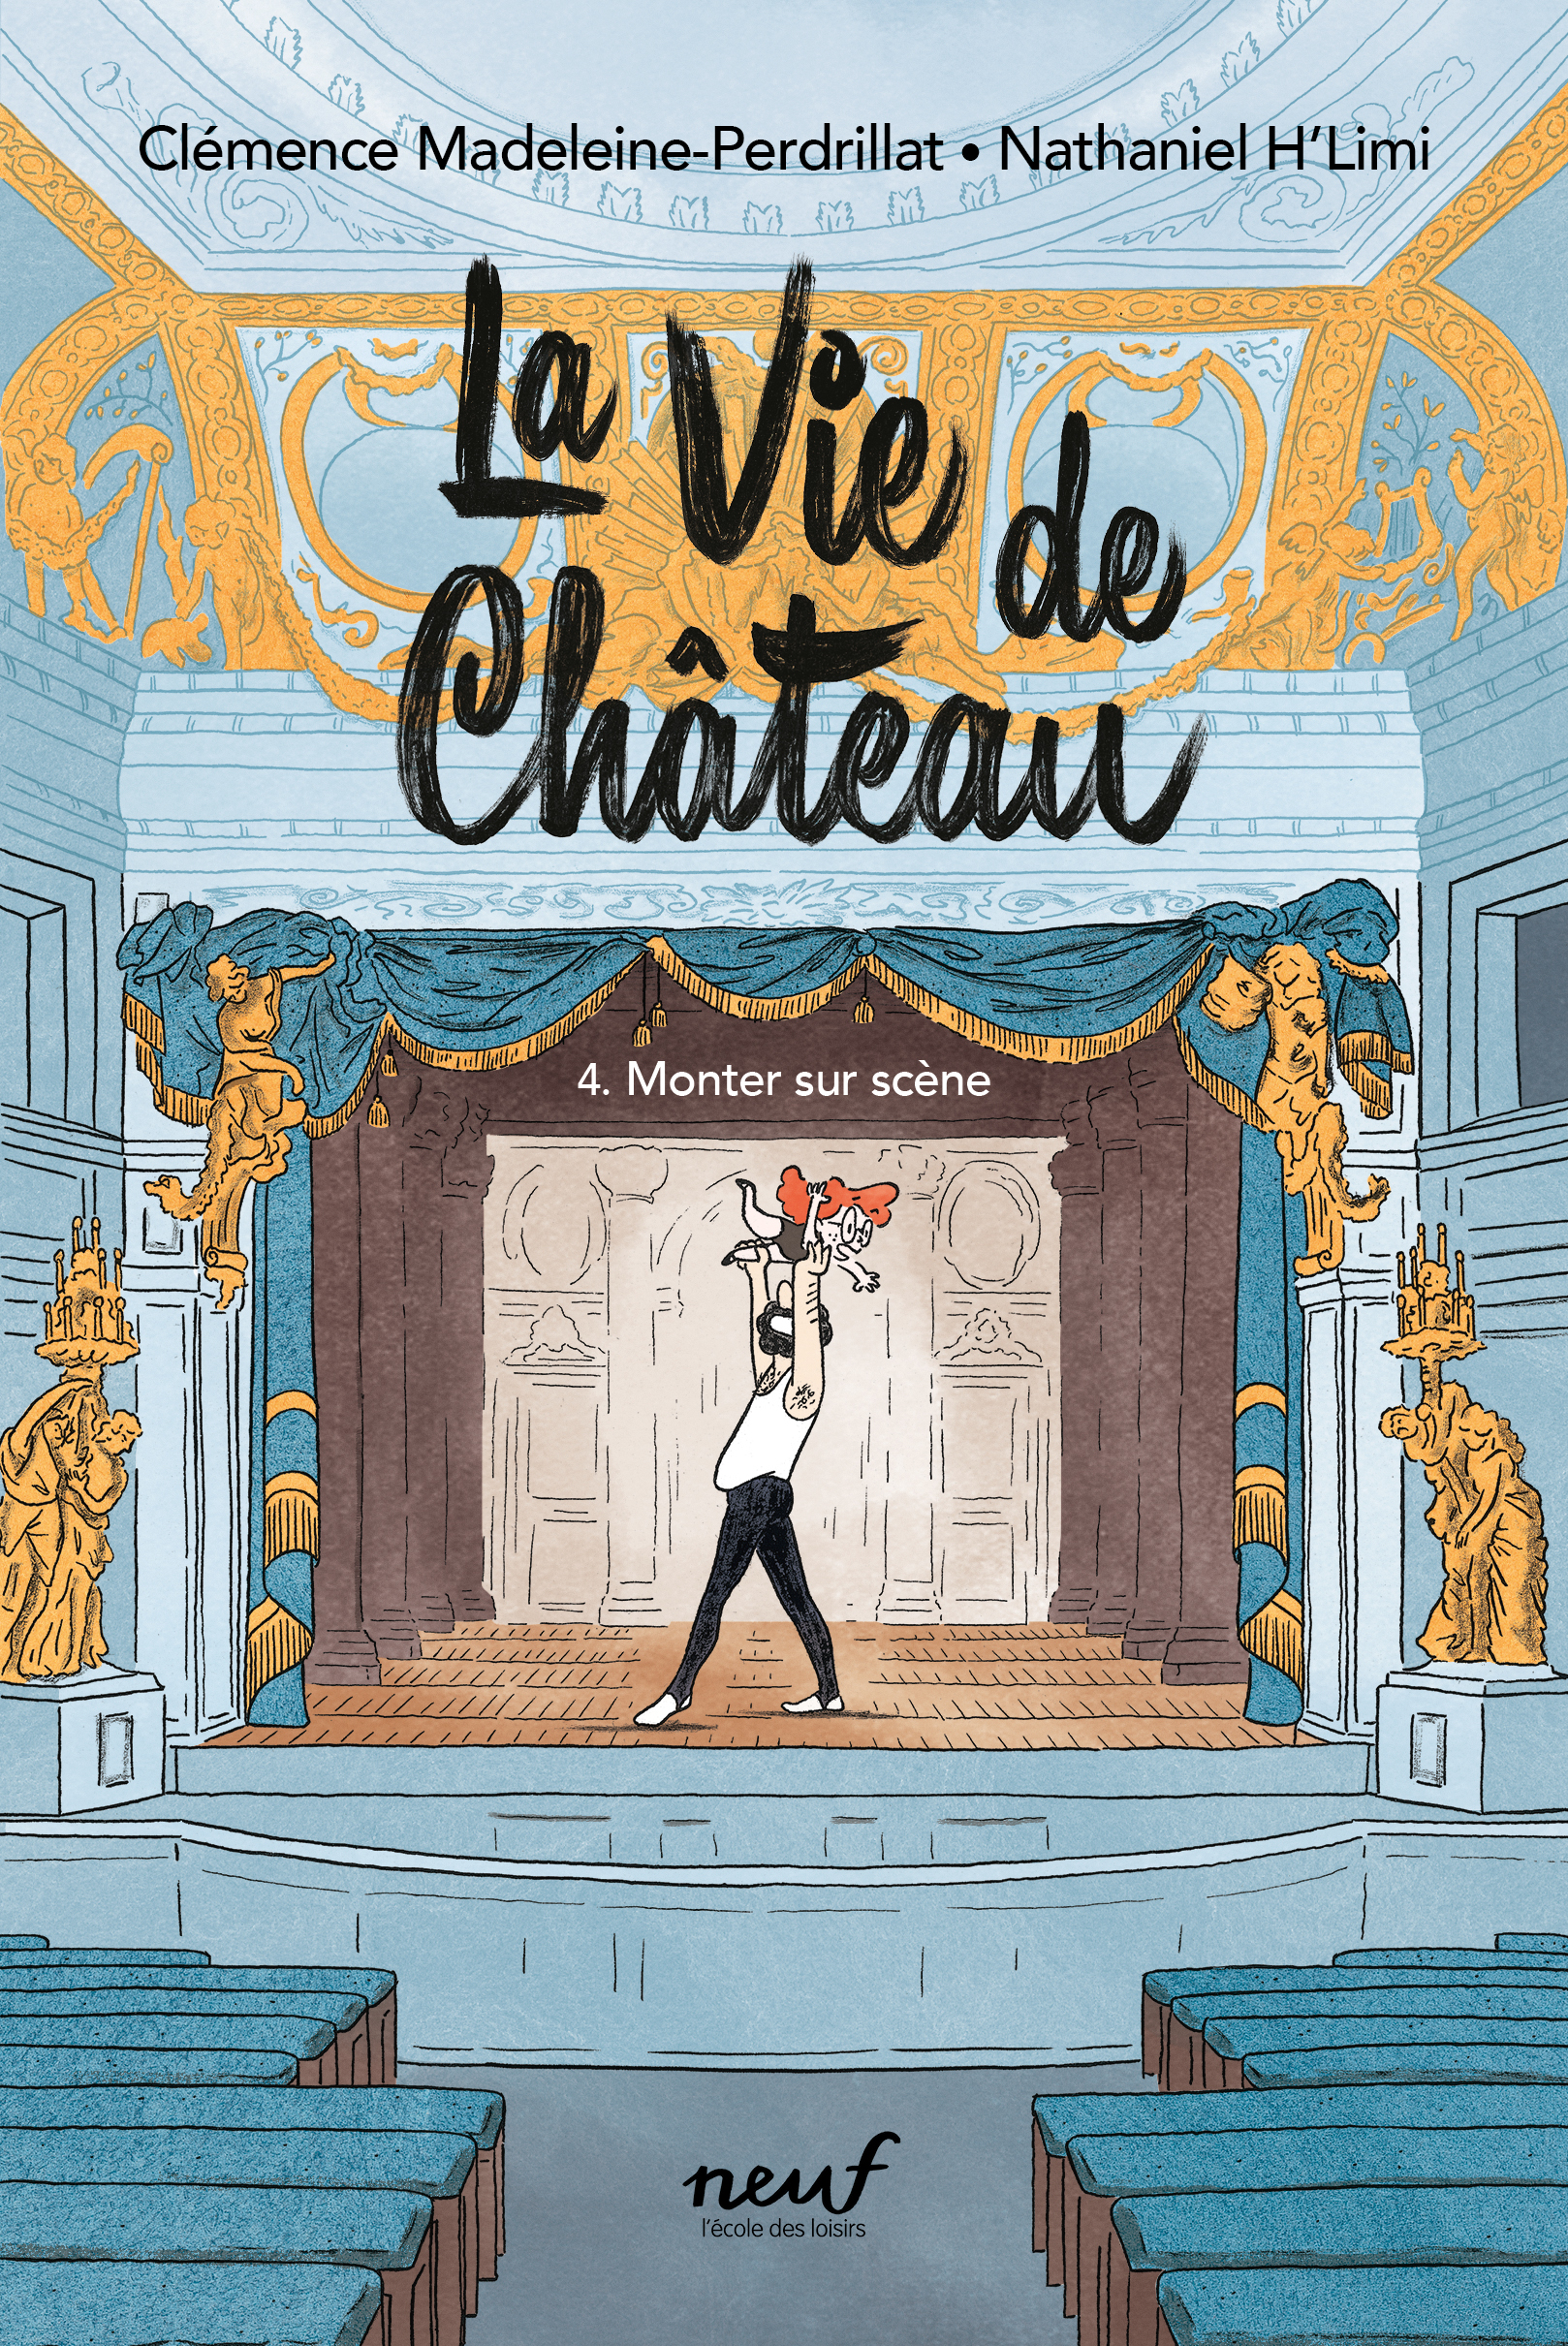 Livre : Le Château ambulant tome 4